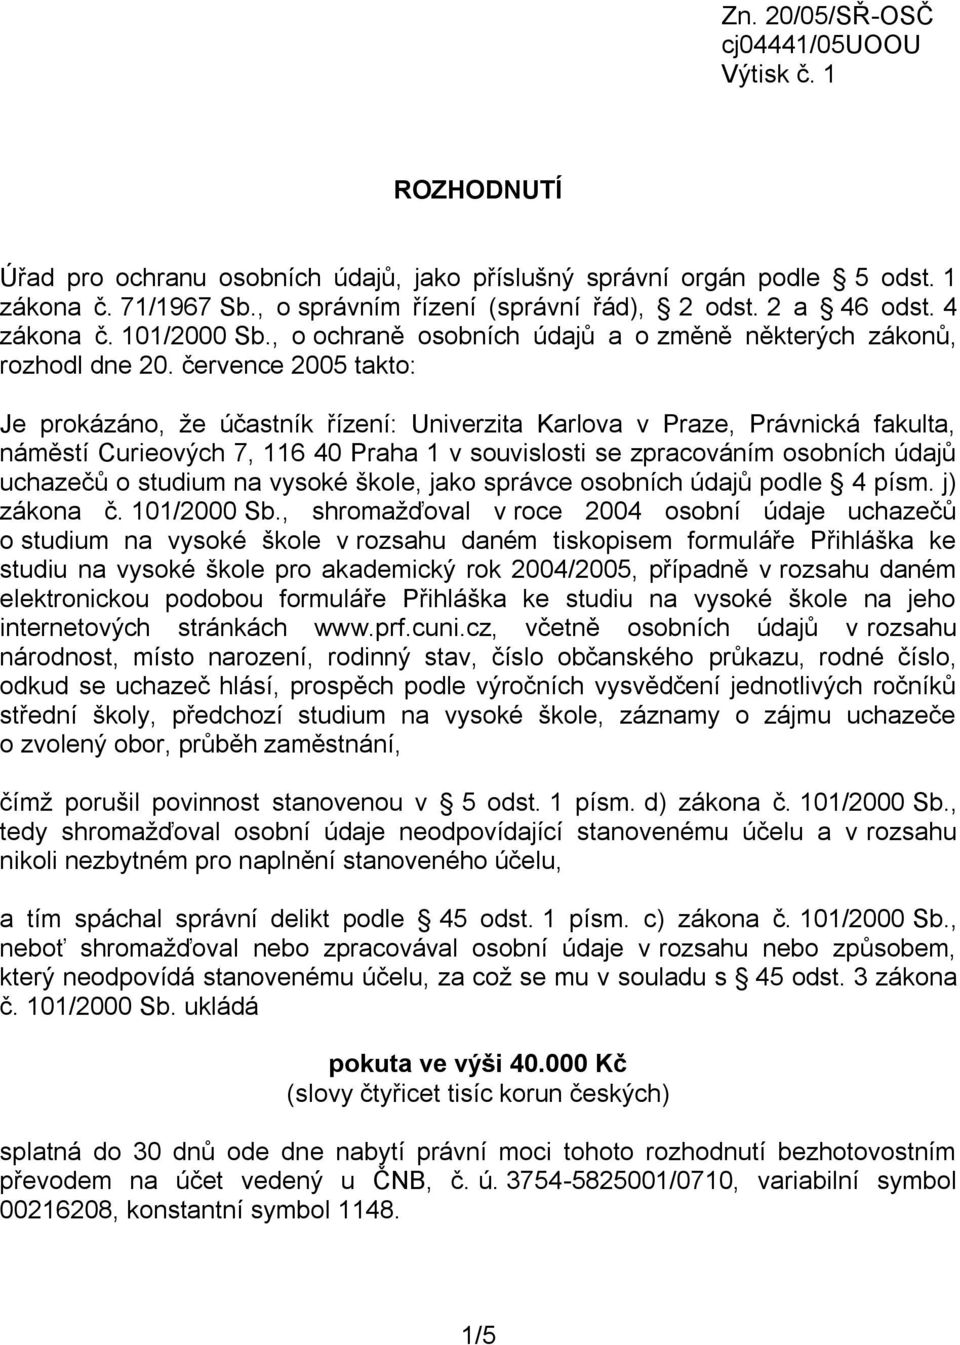 července 2005 takto: Je prokázáno, že účastník řízení: Univerzita Karlova v Praze, Právnická fakulta, náměstí Curieových 7, 116 40 Praha 1 v souvislosti se zpracováním osobních údajů uchazečů o